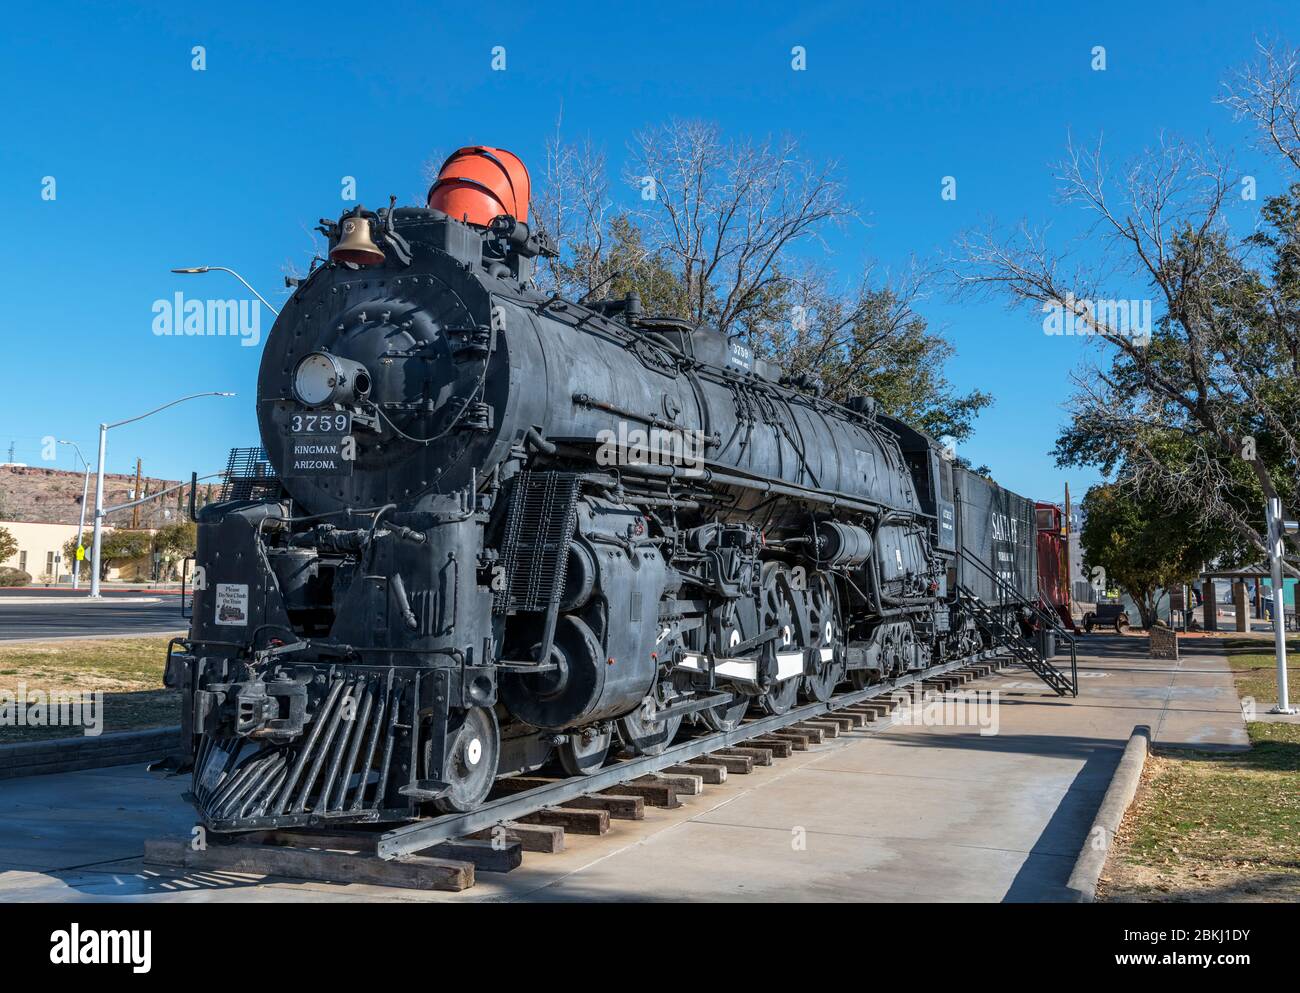 Santa Fe 3759, une locomotive de train à vapeur de type "Nord" de calibre 4-8-4, Locomotive Park, Kingman, Arizona, États-Unis Banque D'Images